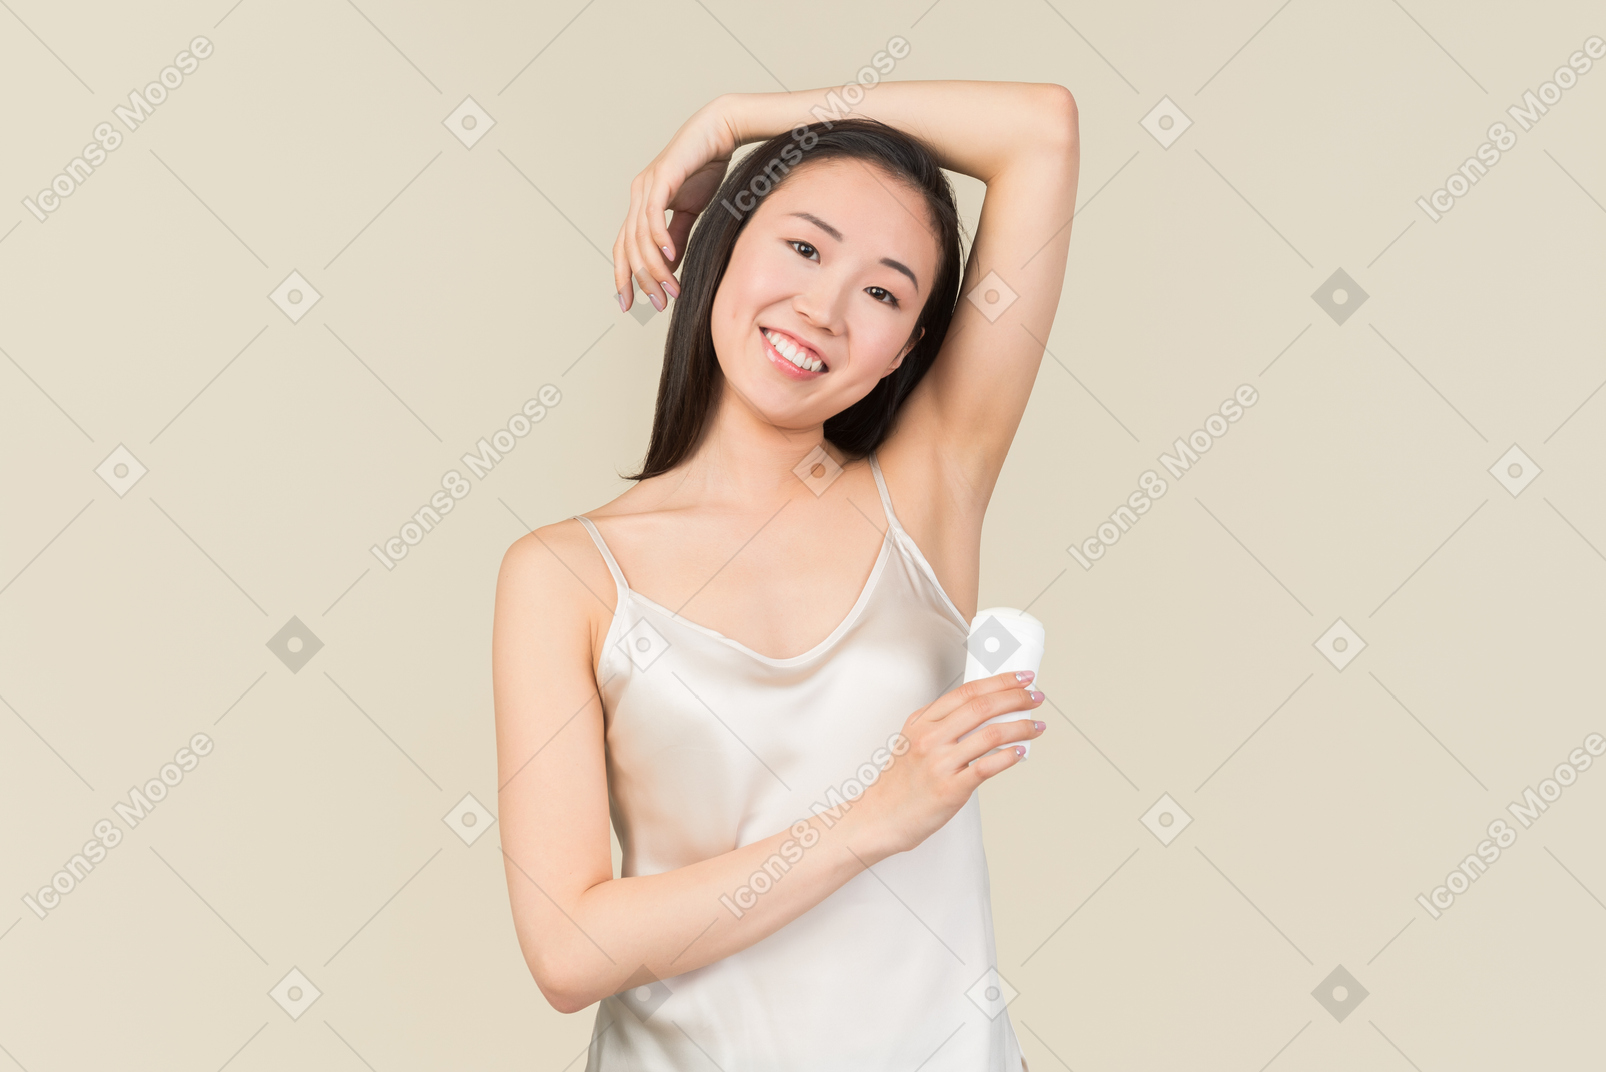 Jolie femme asiatique appliquant un déodorant sur la zone des aisselles